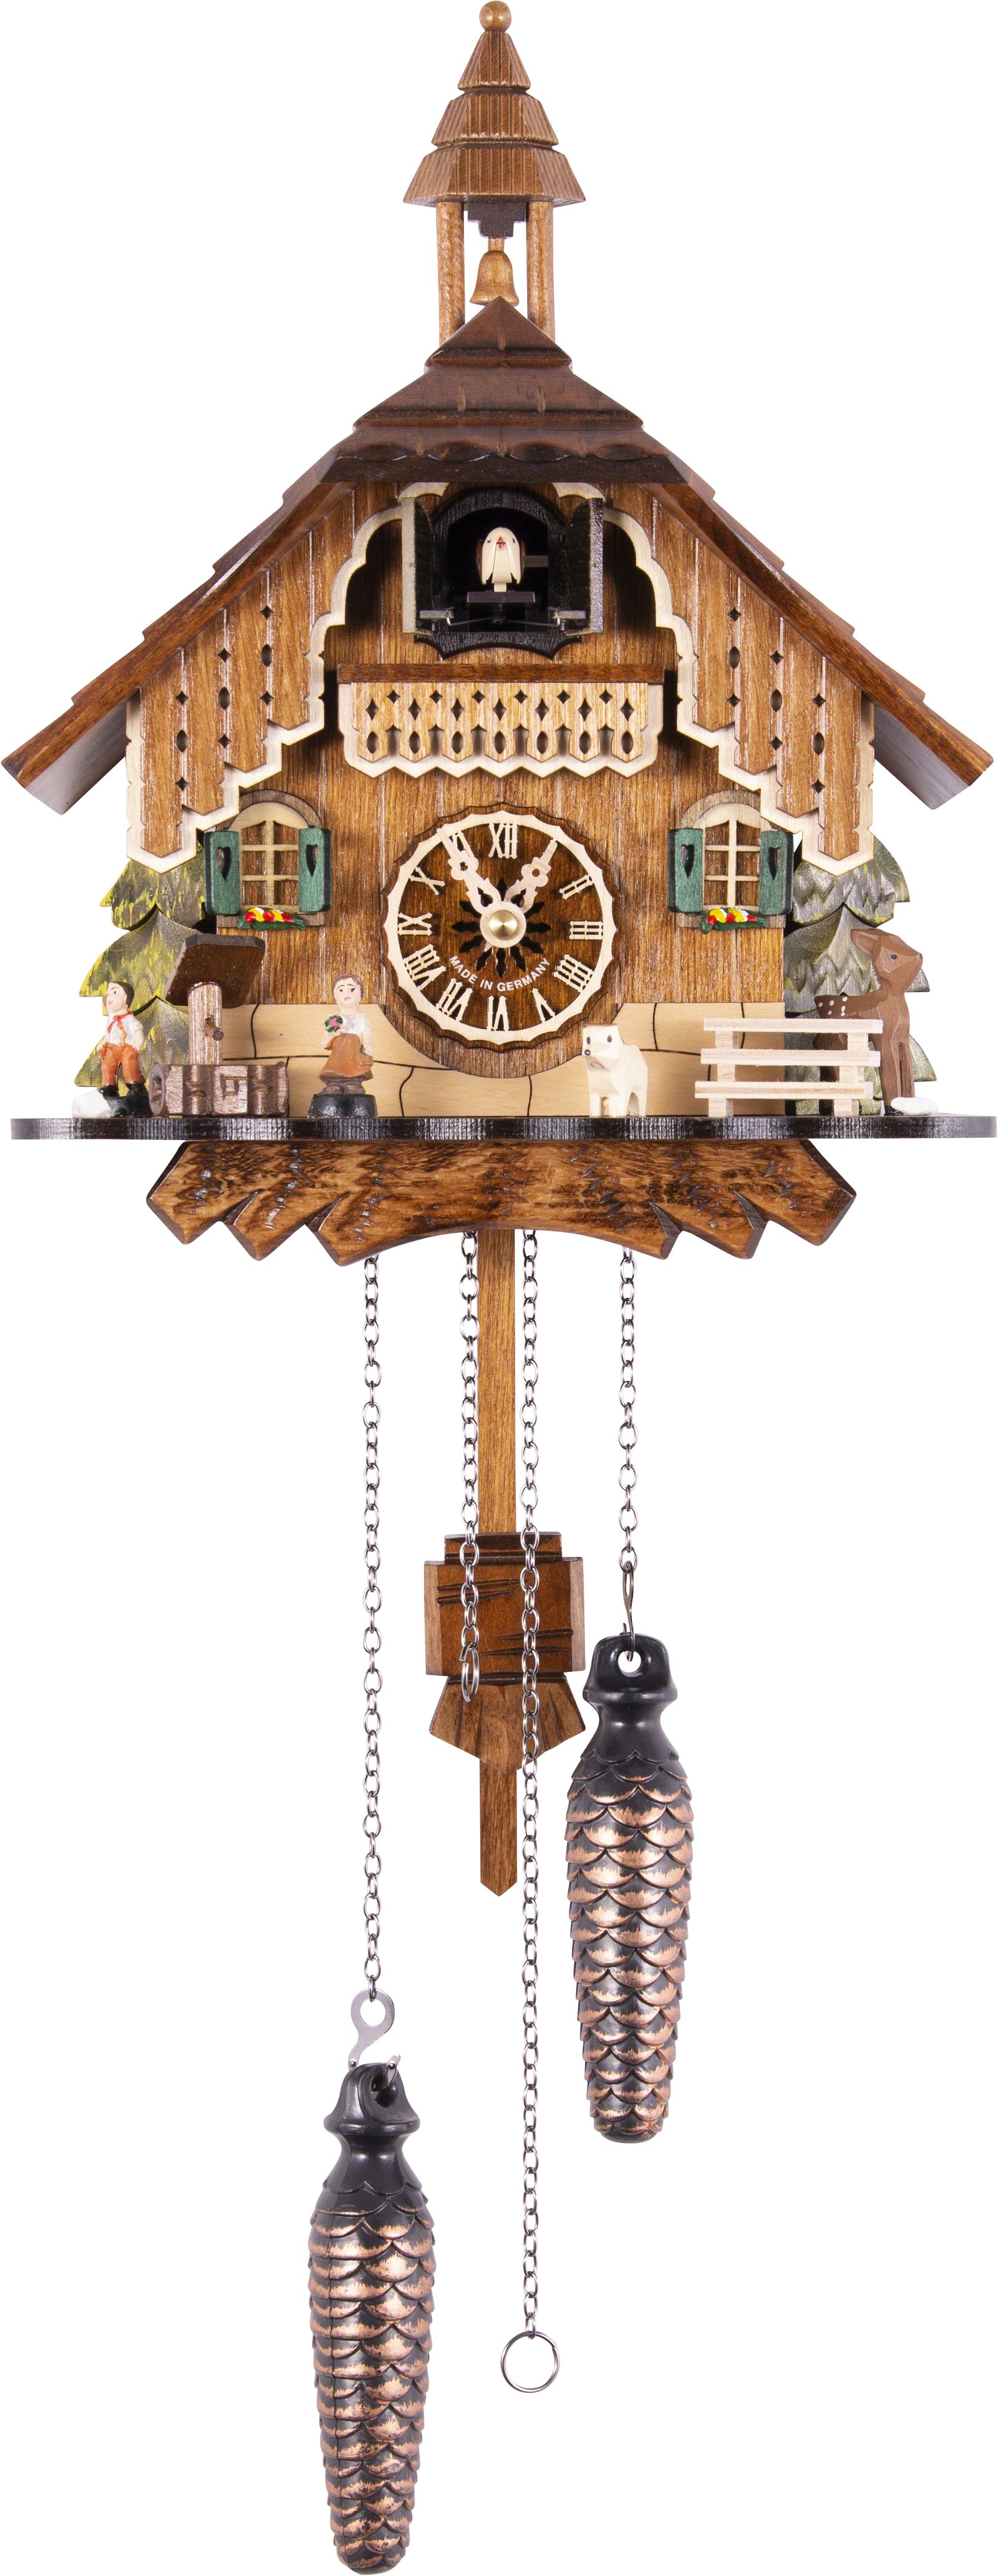 Kuckucksuhr Quarz-Uhrwerk Chalet-Stil 29cm von Engstler